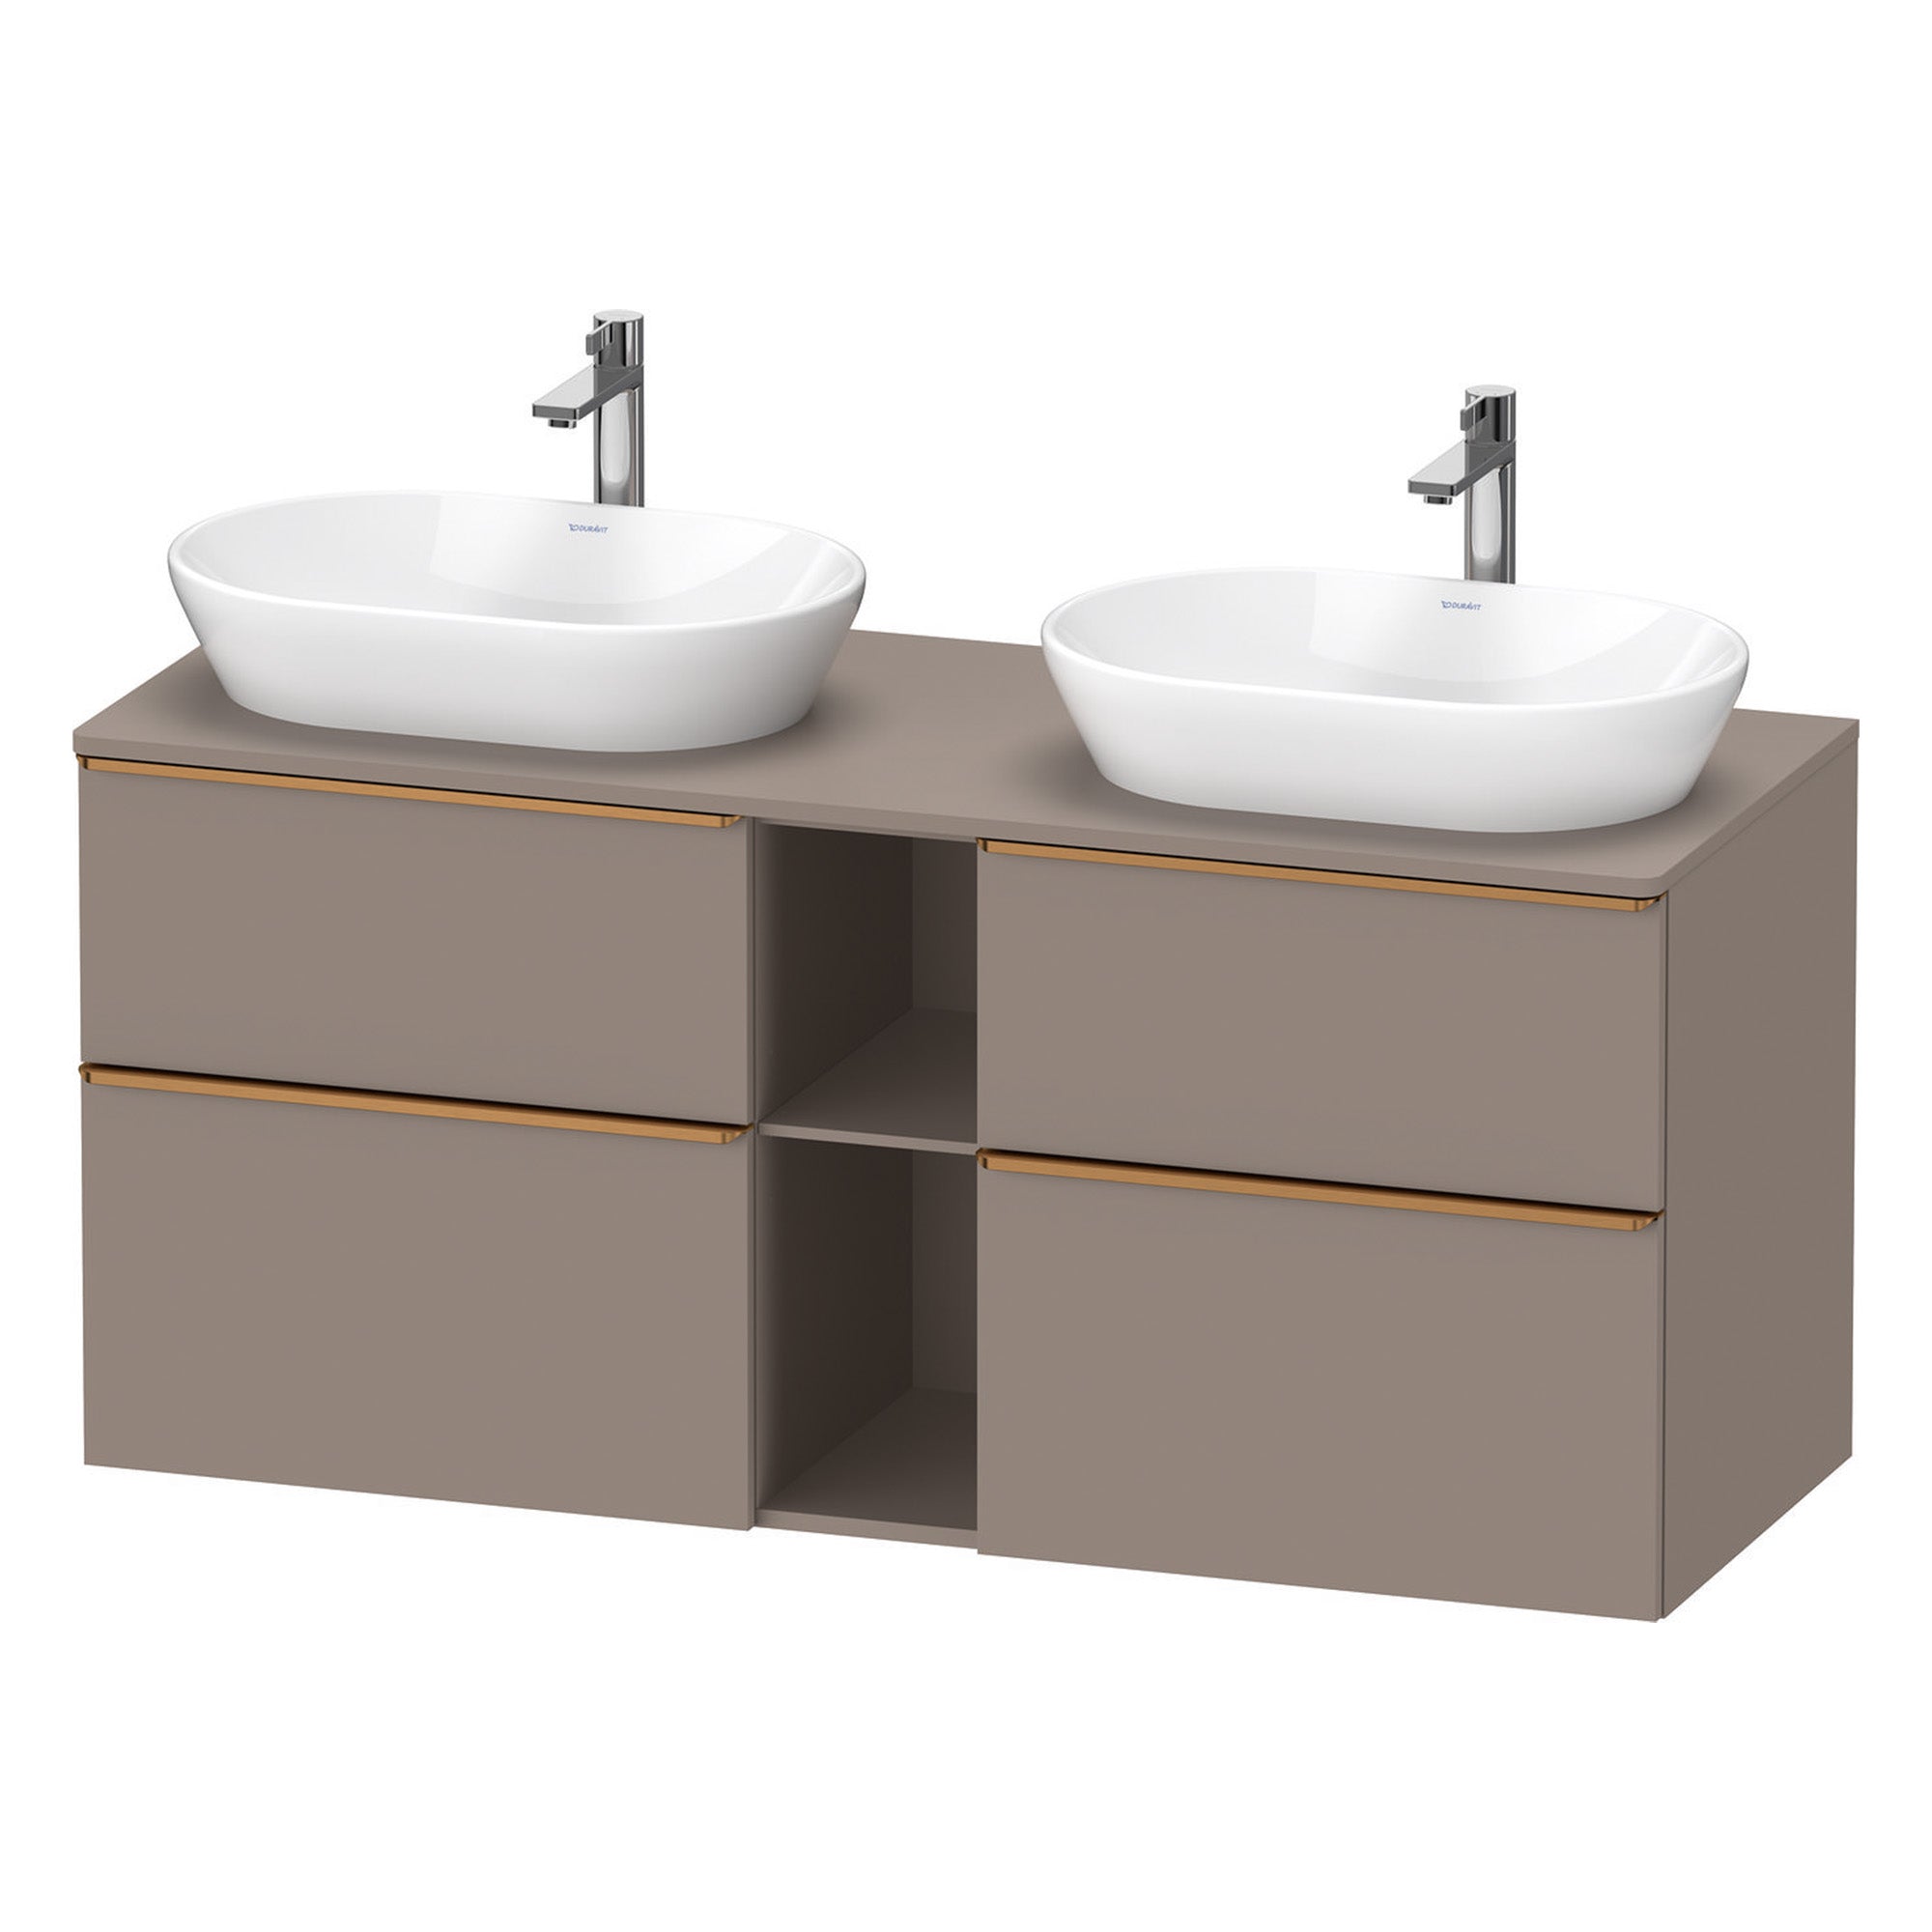 duravit d-neo 1400 wall mounted vanity unit with worktop 2 open shelves basalt brushed bronze handles